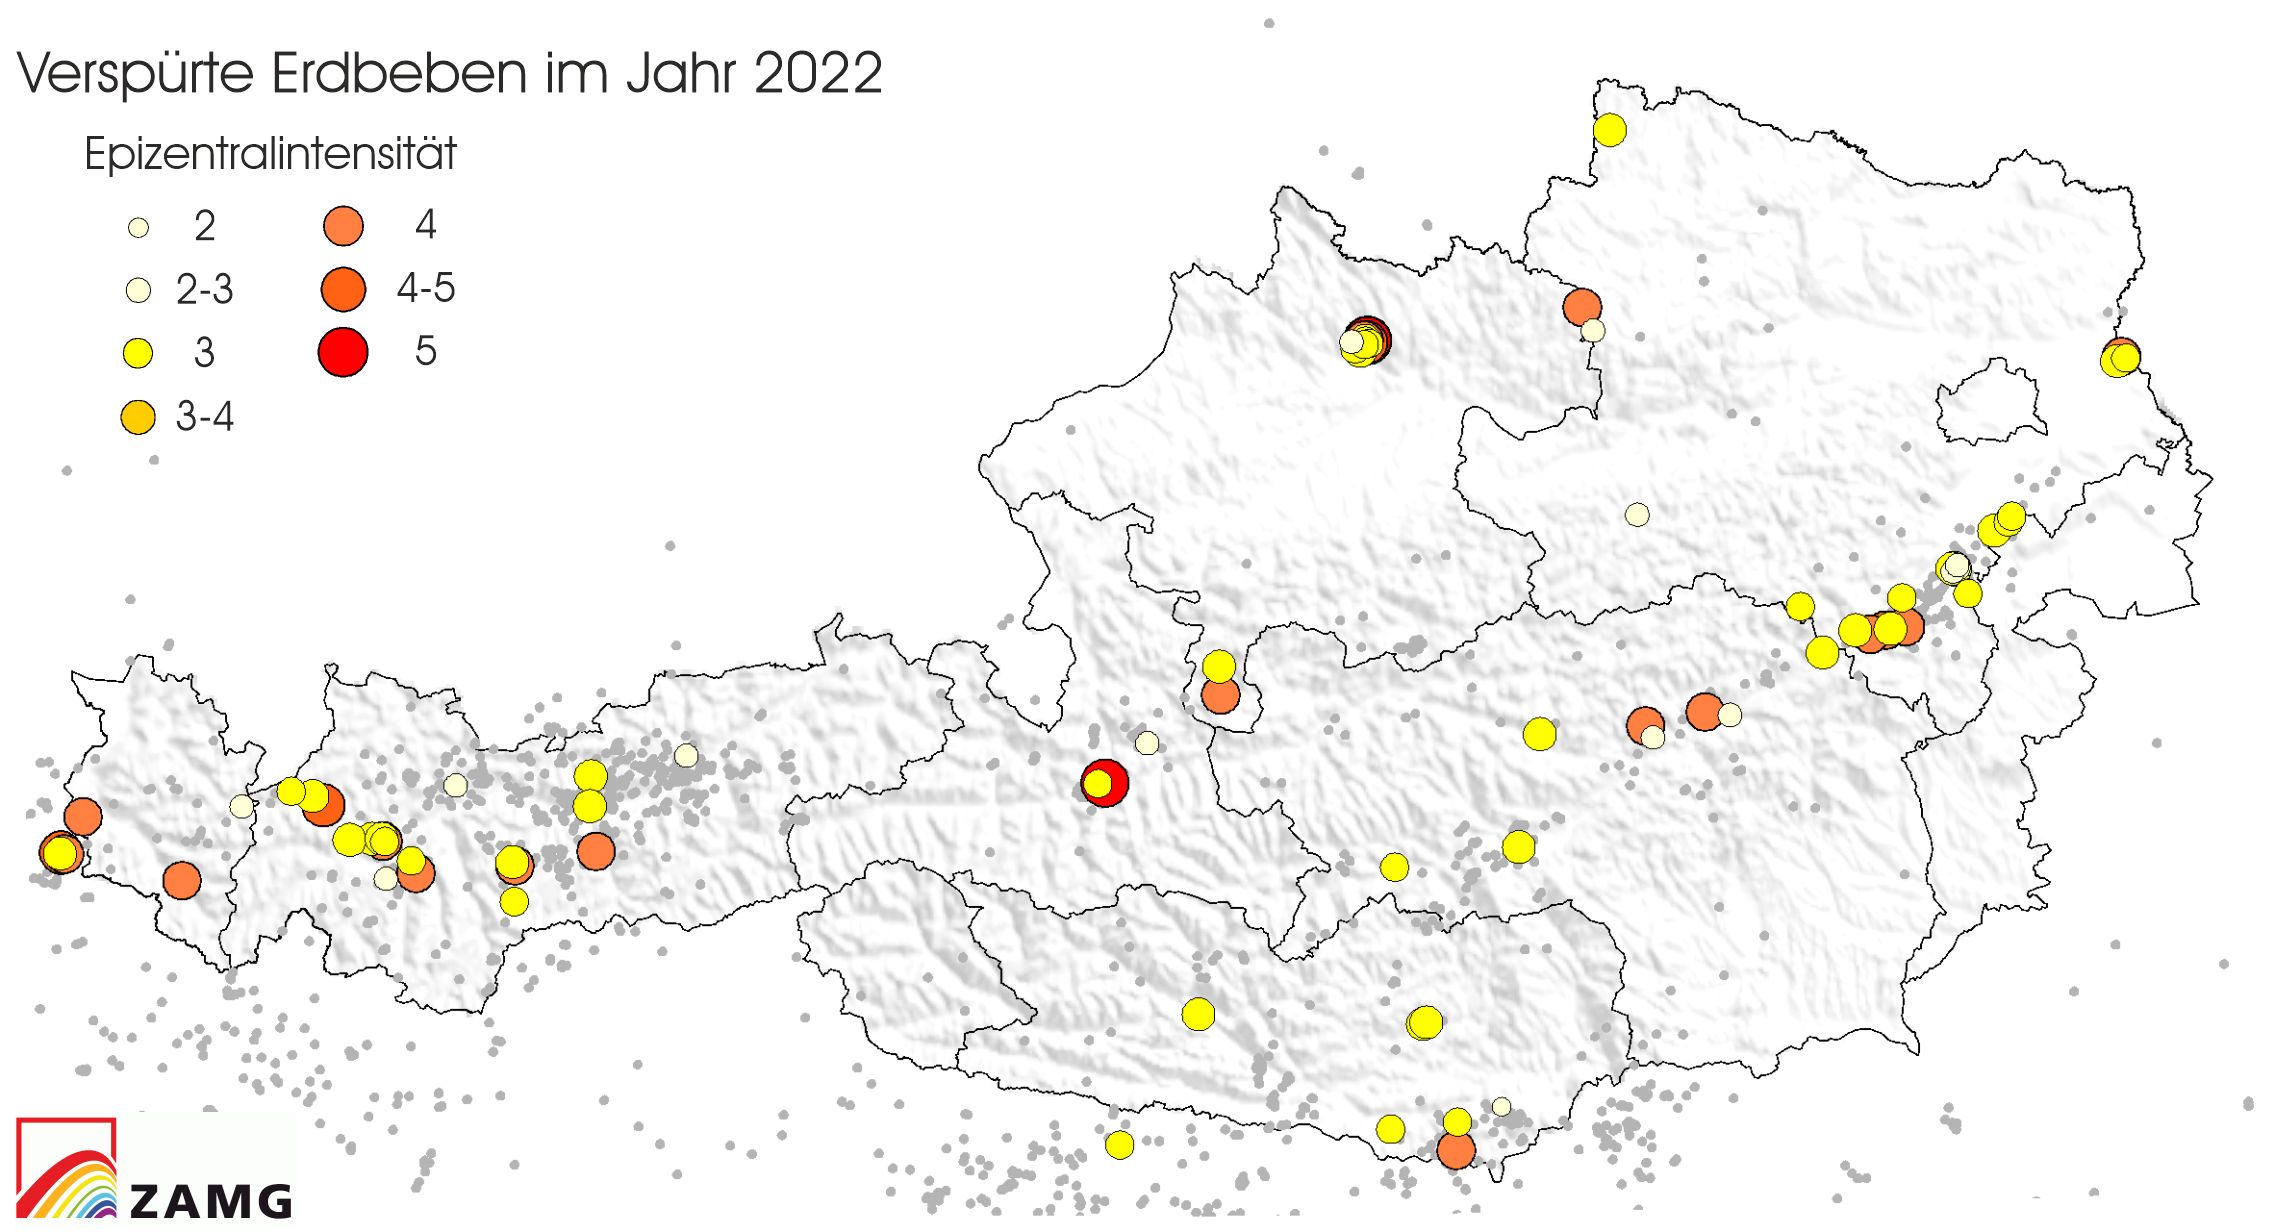 2022 in Österreich relativ viele Erdbeben